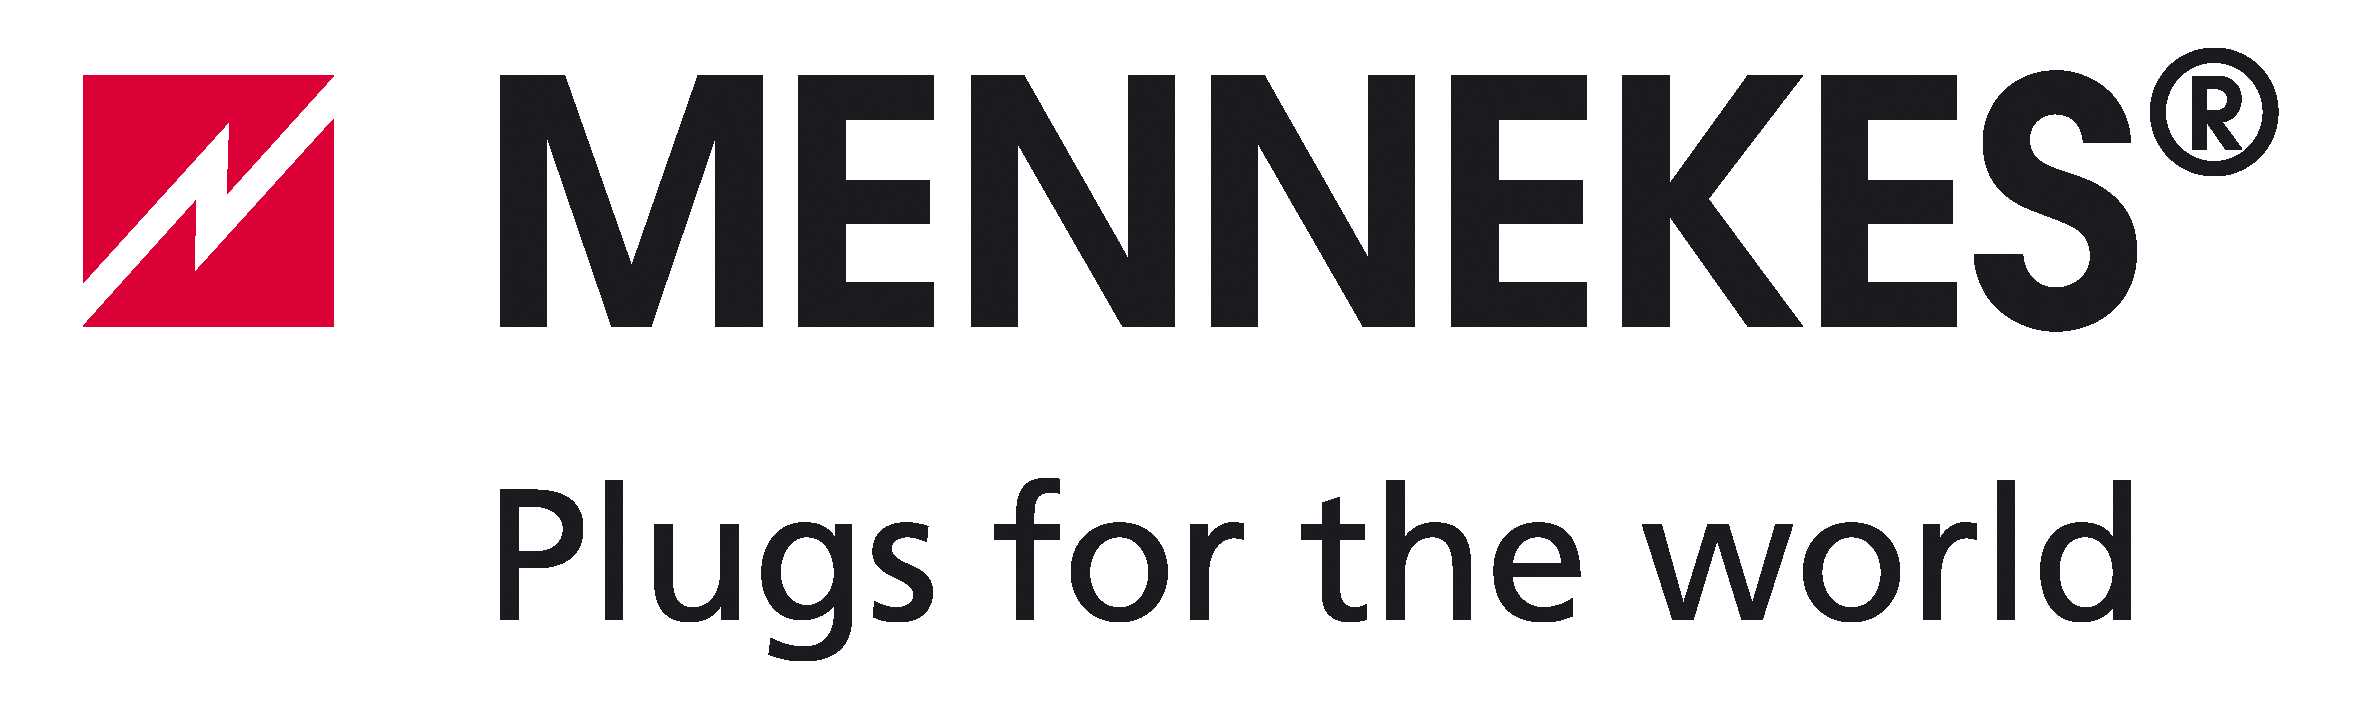 Mennekes_Logo